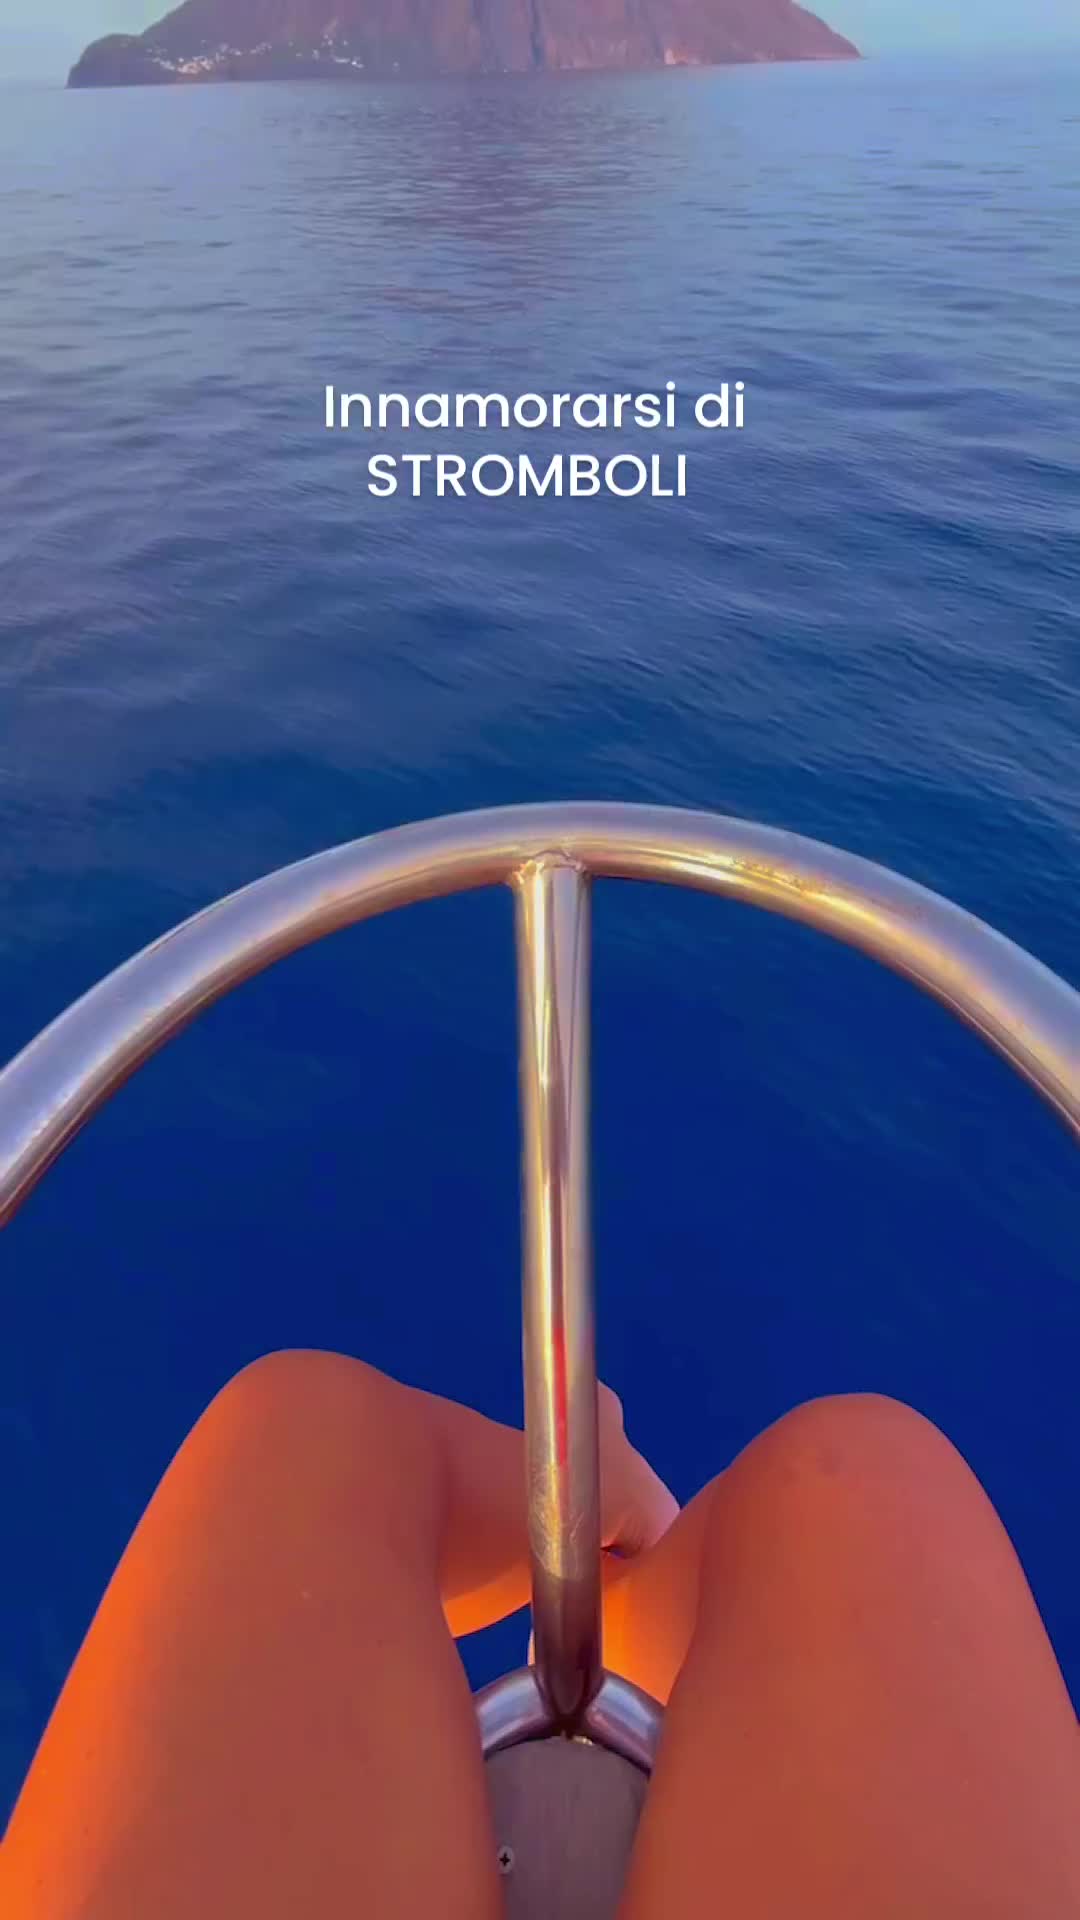 Innamorarsi di Stromboli: Discover Sicily's Hidden Gem